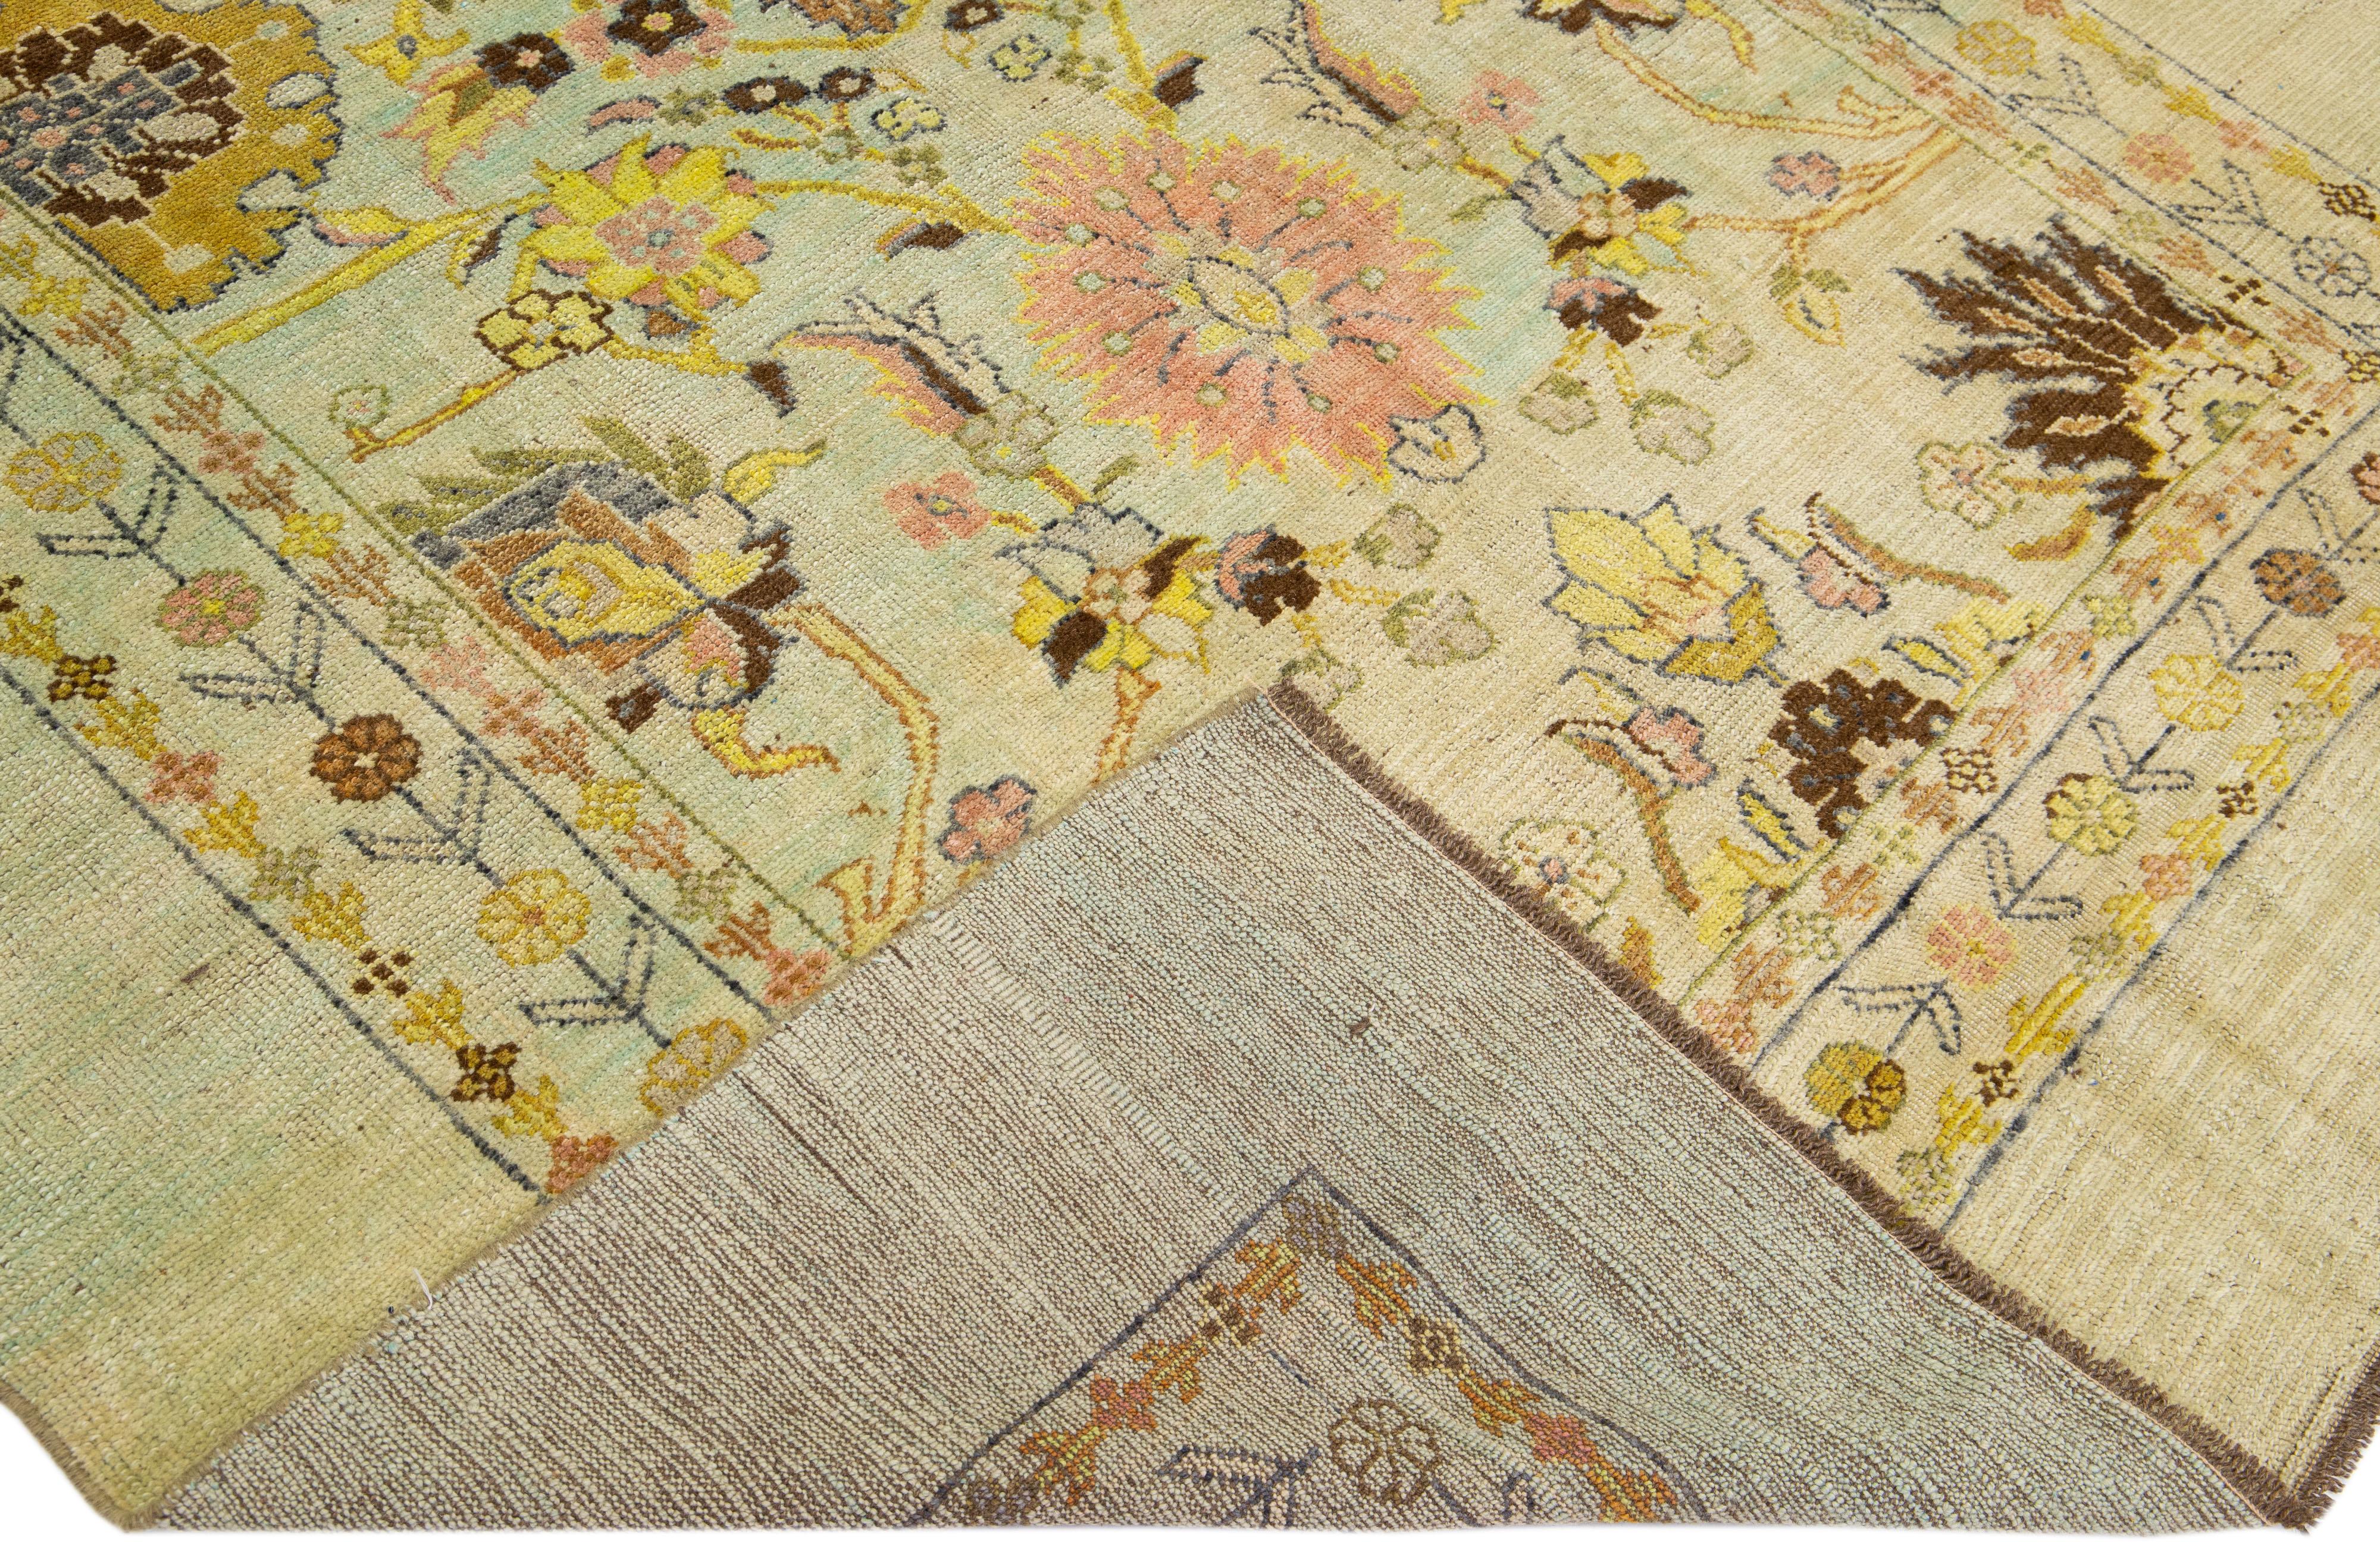 Dieser schöne moderne Art Deco-Teppich aus handgefertigter Wolle ist Teil unserer Northwest-Kollektion und zeichnet sich durch ein grünes und beiges Farbfeld und mehrfarbige Akzente in einem wunderschönen Blumenmotiv aus.

Dieser Teppich misst: